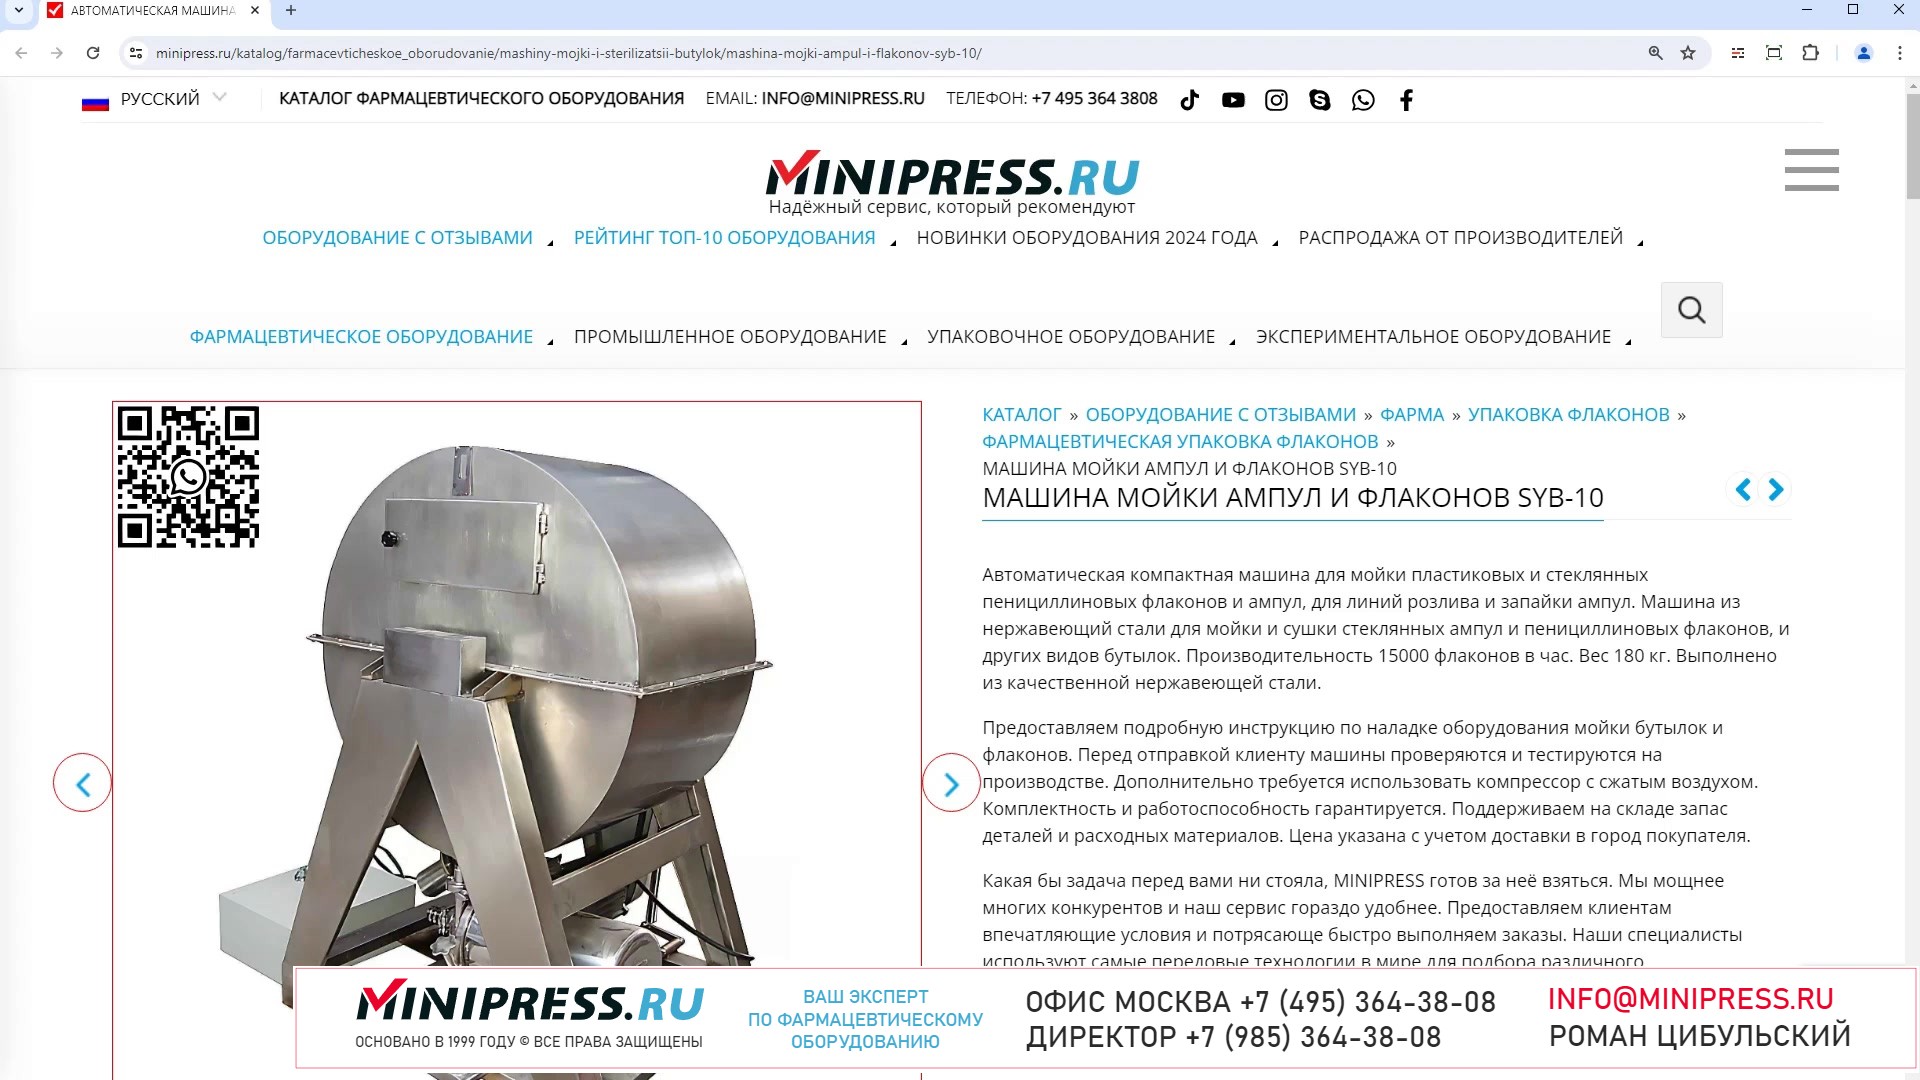 Minipress.ru Машина мойки ампул и флаконов SYB-10